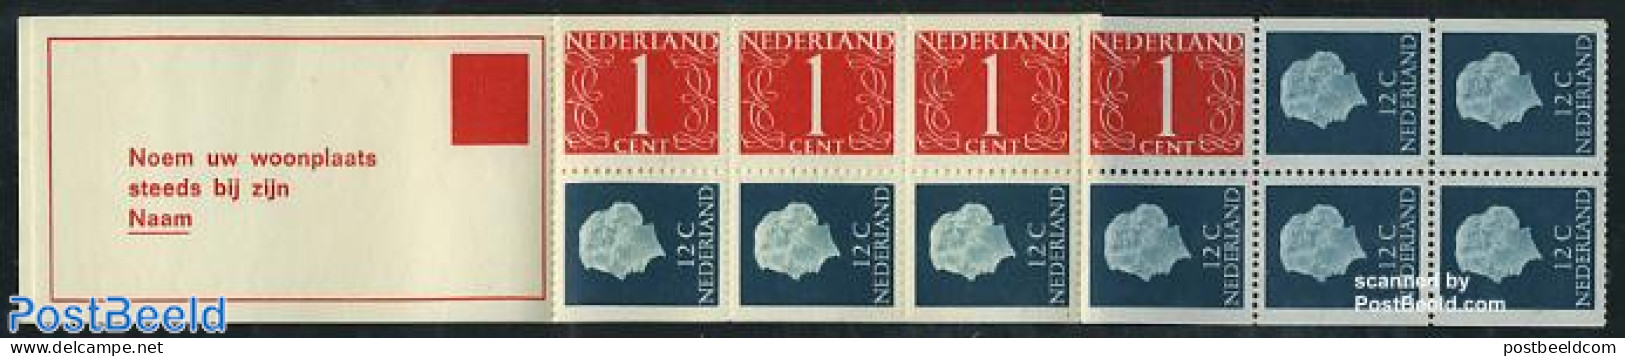 Netherlands 1970 4x1,8x12c Booklet, Normal Paper, Text: Noem Uw Woo, Mint NH, Stamp Booklets - Ongebruikt